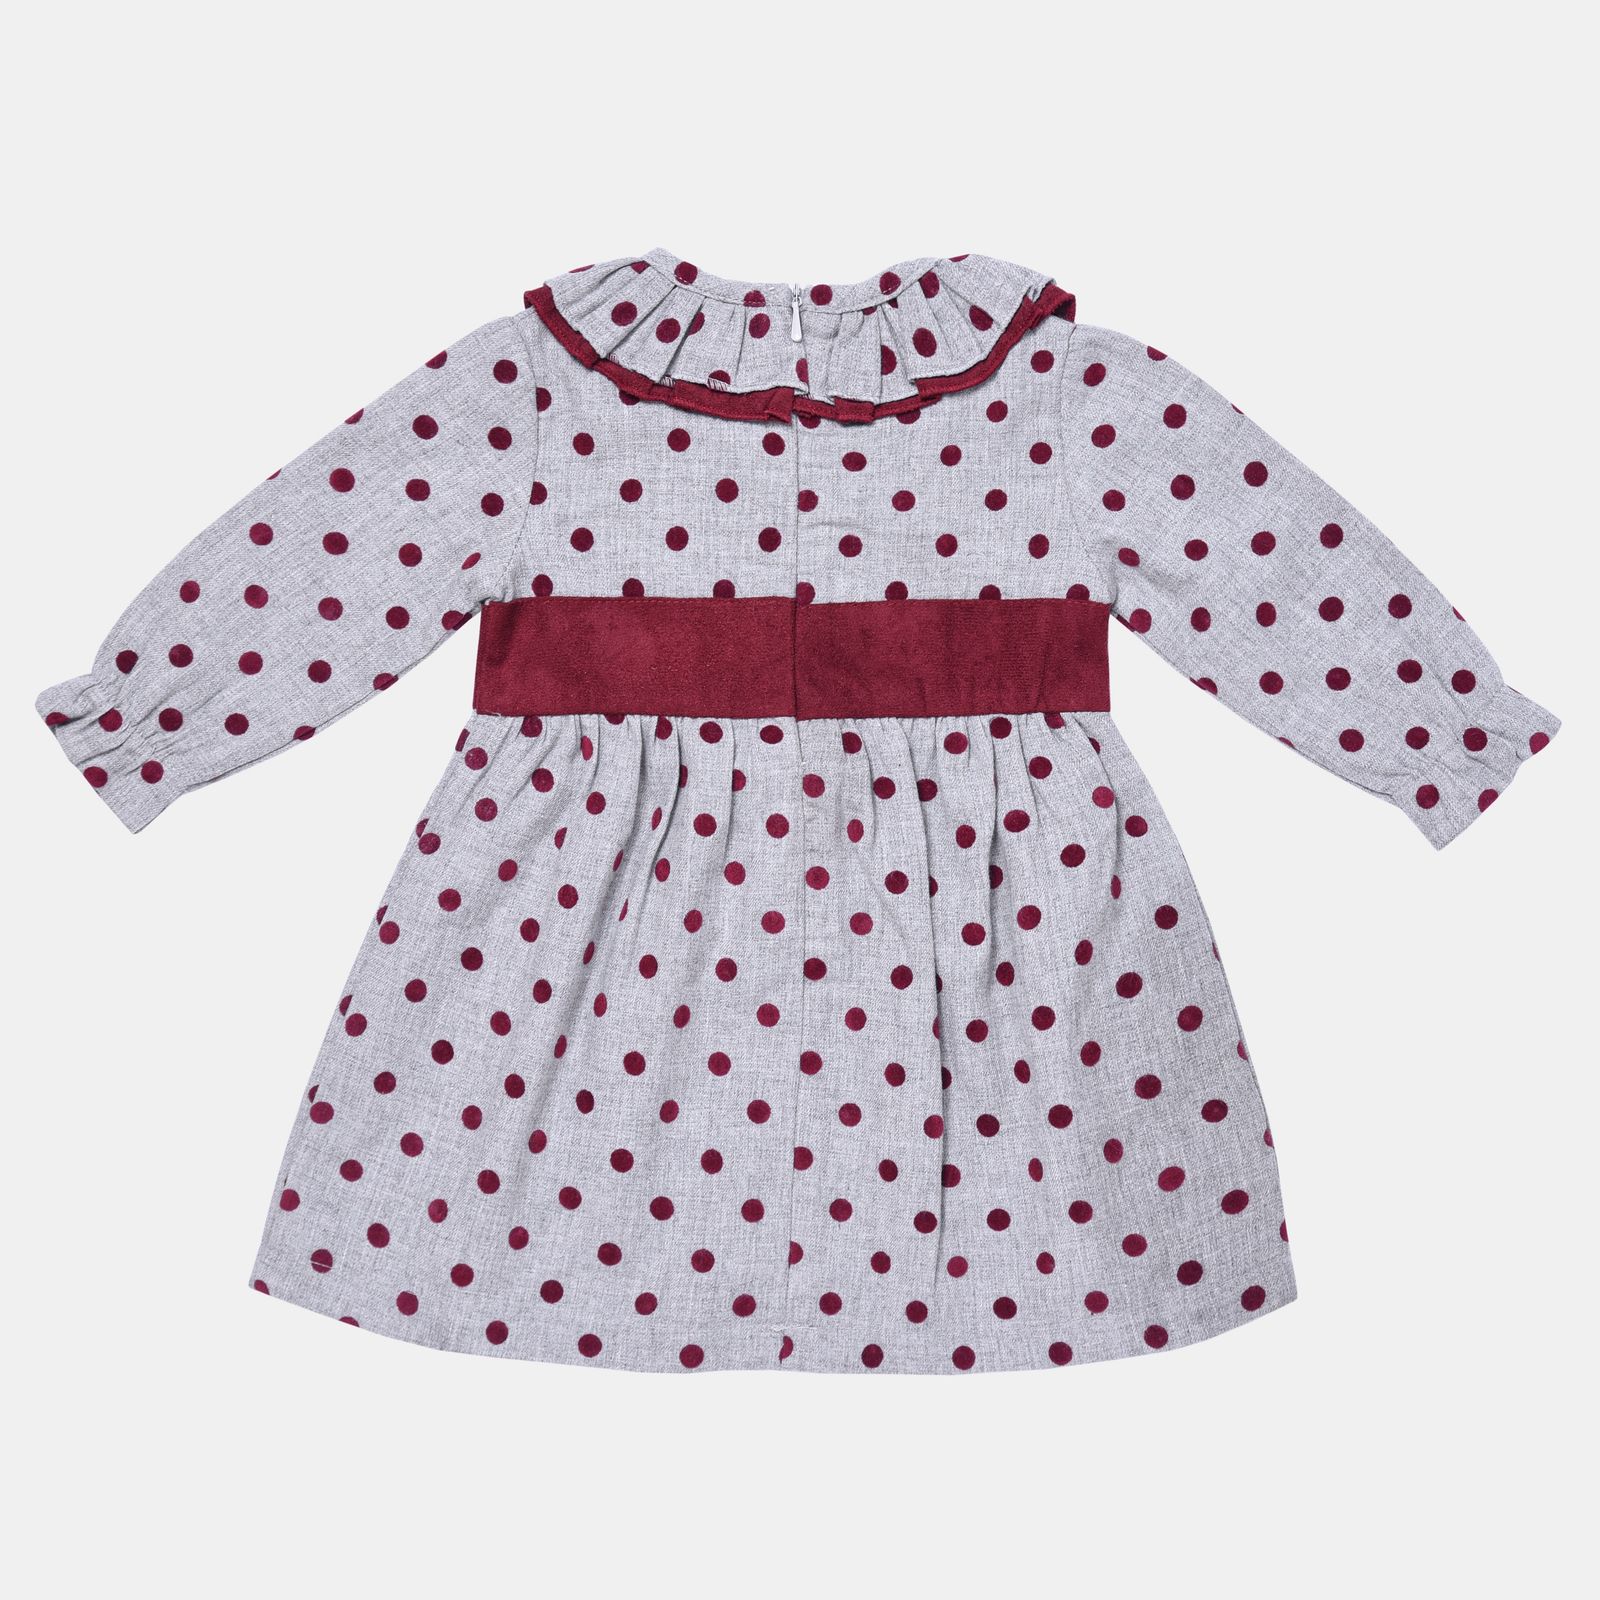 پیراهن نوزادی فیورلا مدل هانا 1 کد 21521 -  - 2